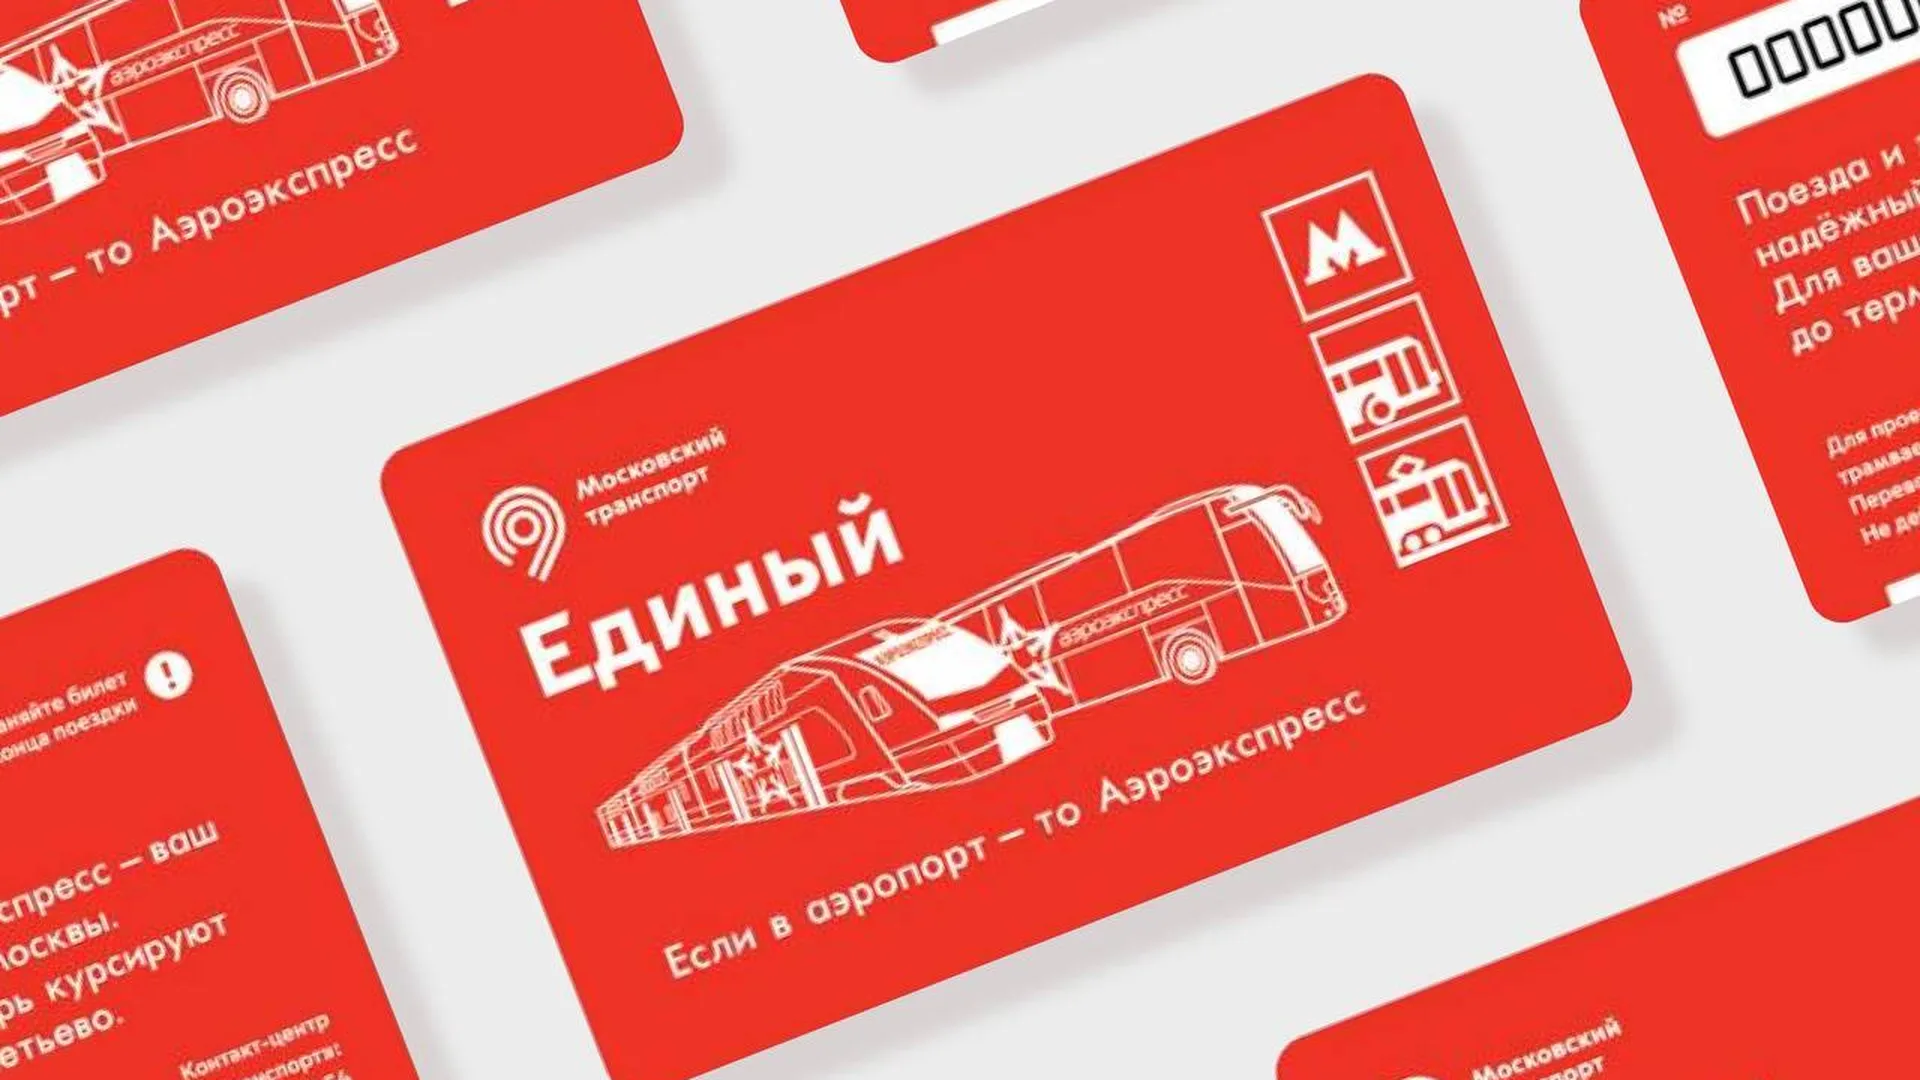 В московском метро в продажу запустили тематические билеты дизайна «Аэроэкспресс»